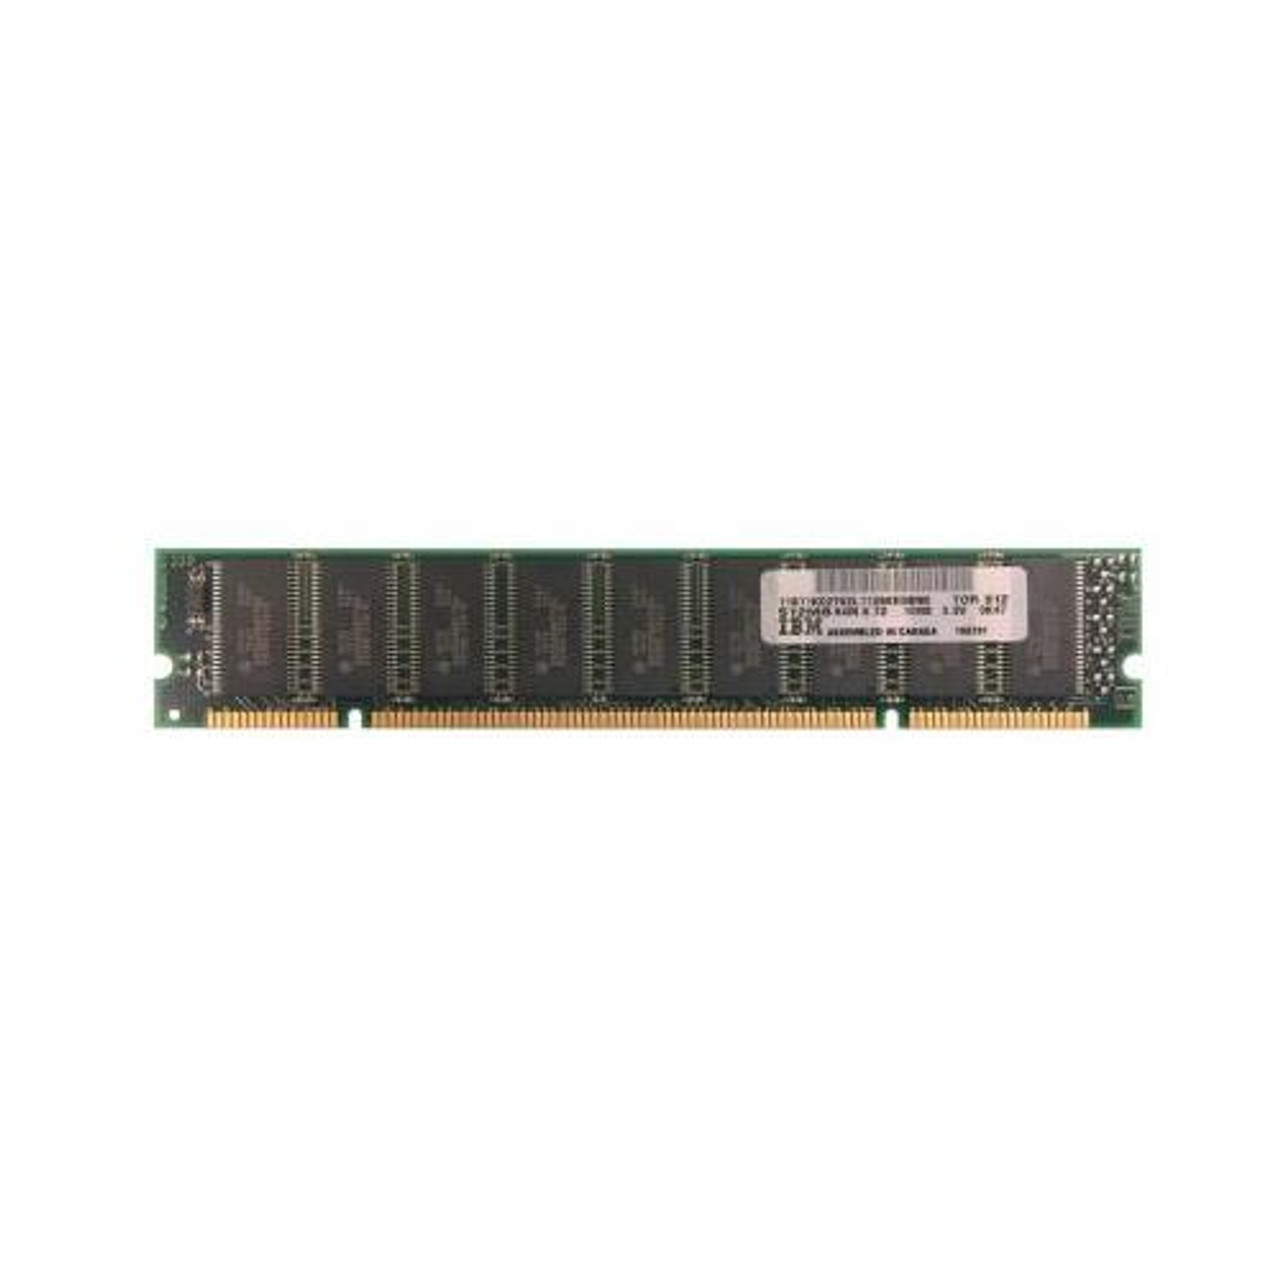 11K0276 IBM 512MB SDRAM ECC 100Mhz PC-100 Memory